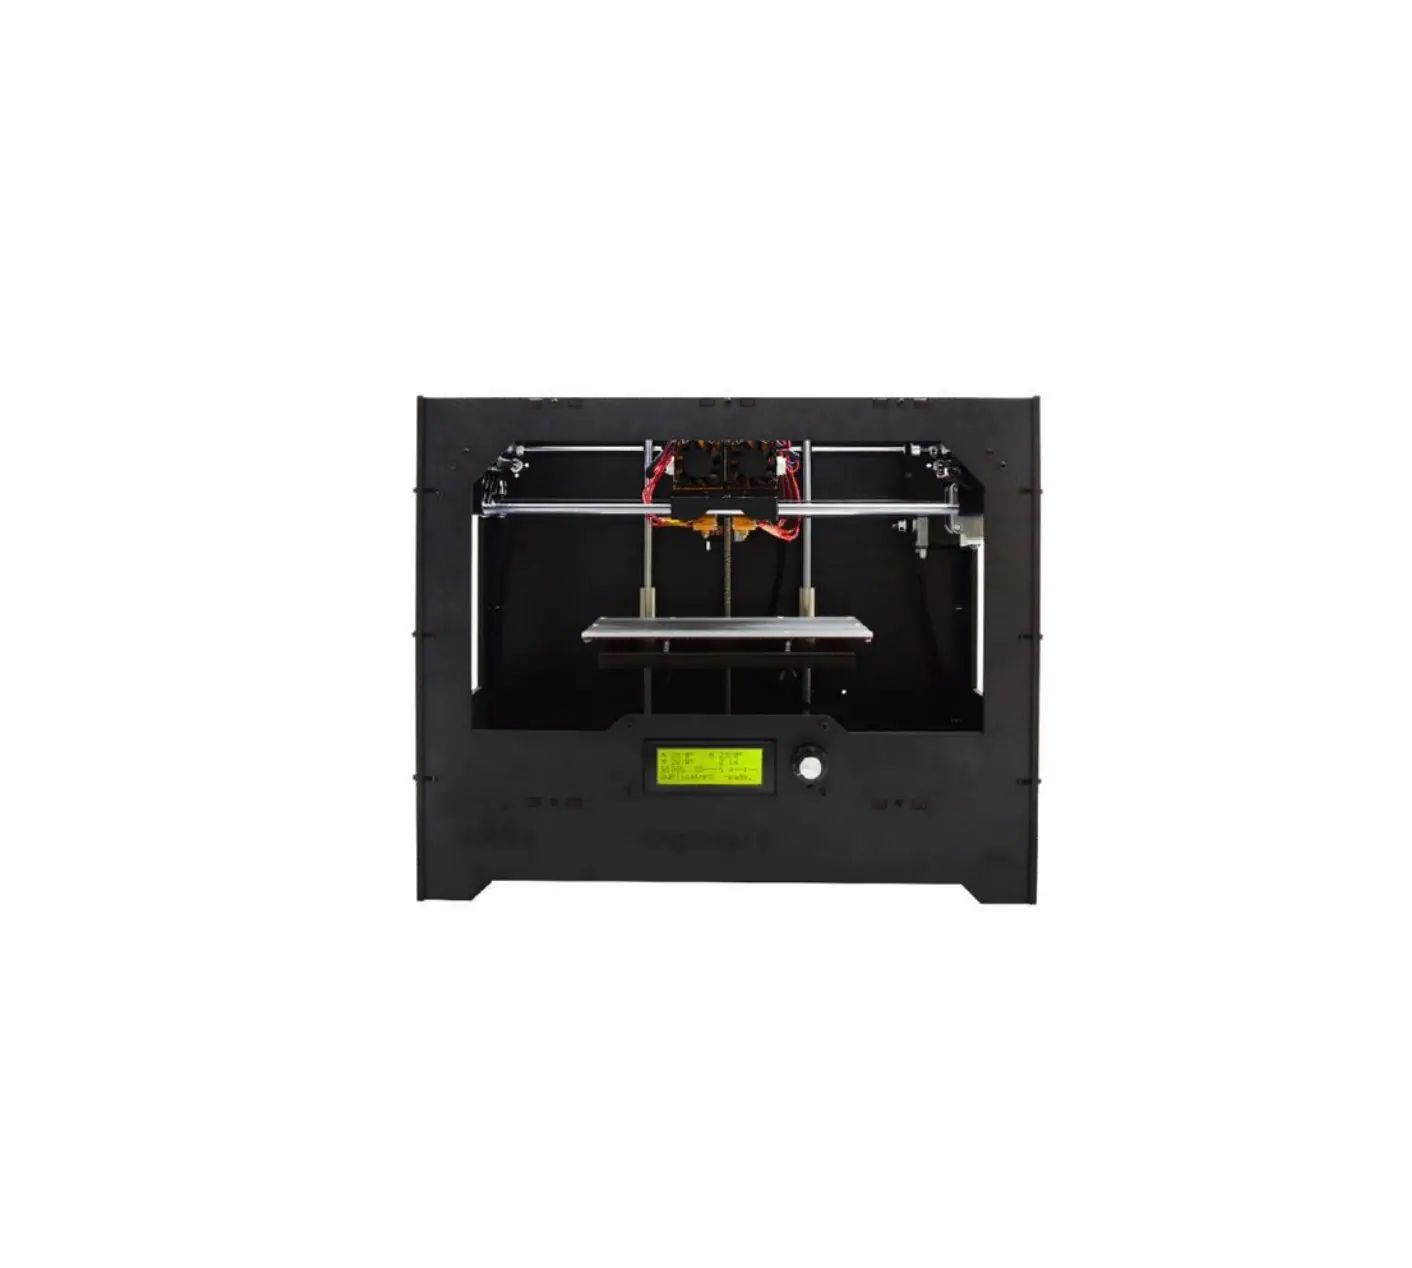 Duplicator 5 DIY 3D Printer